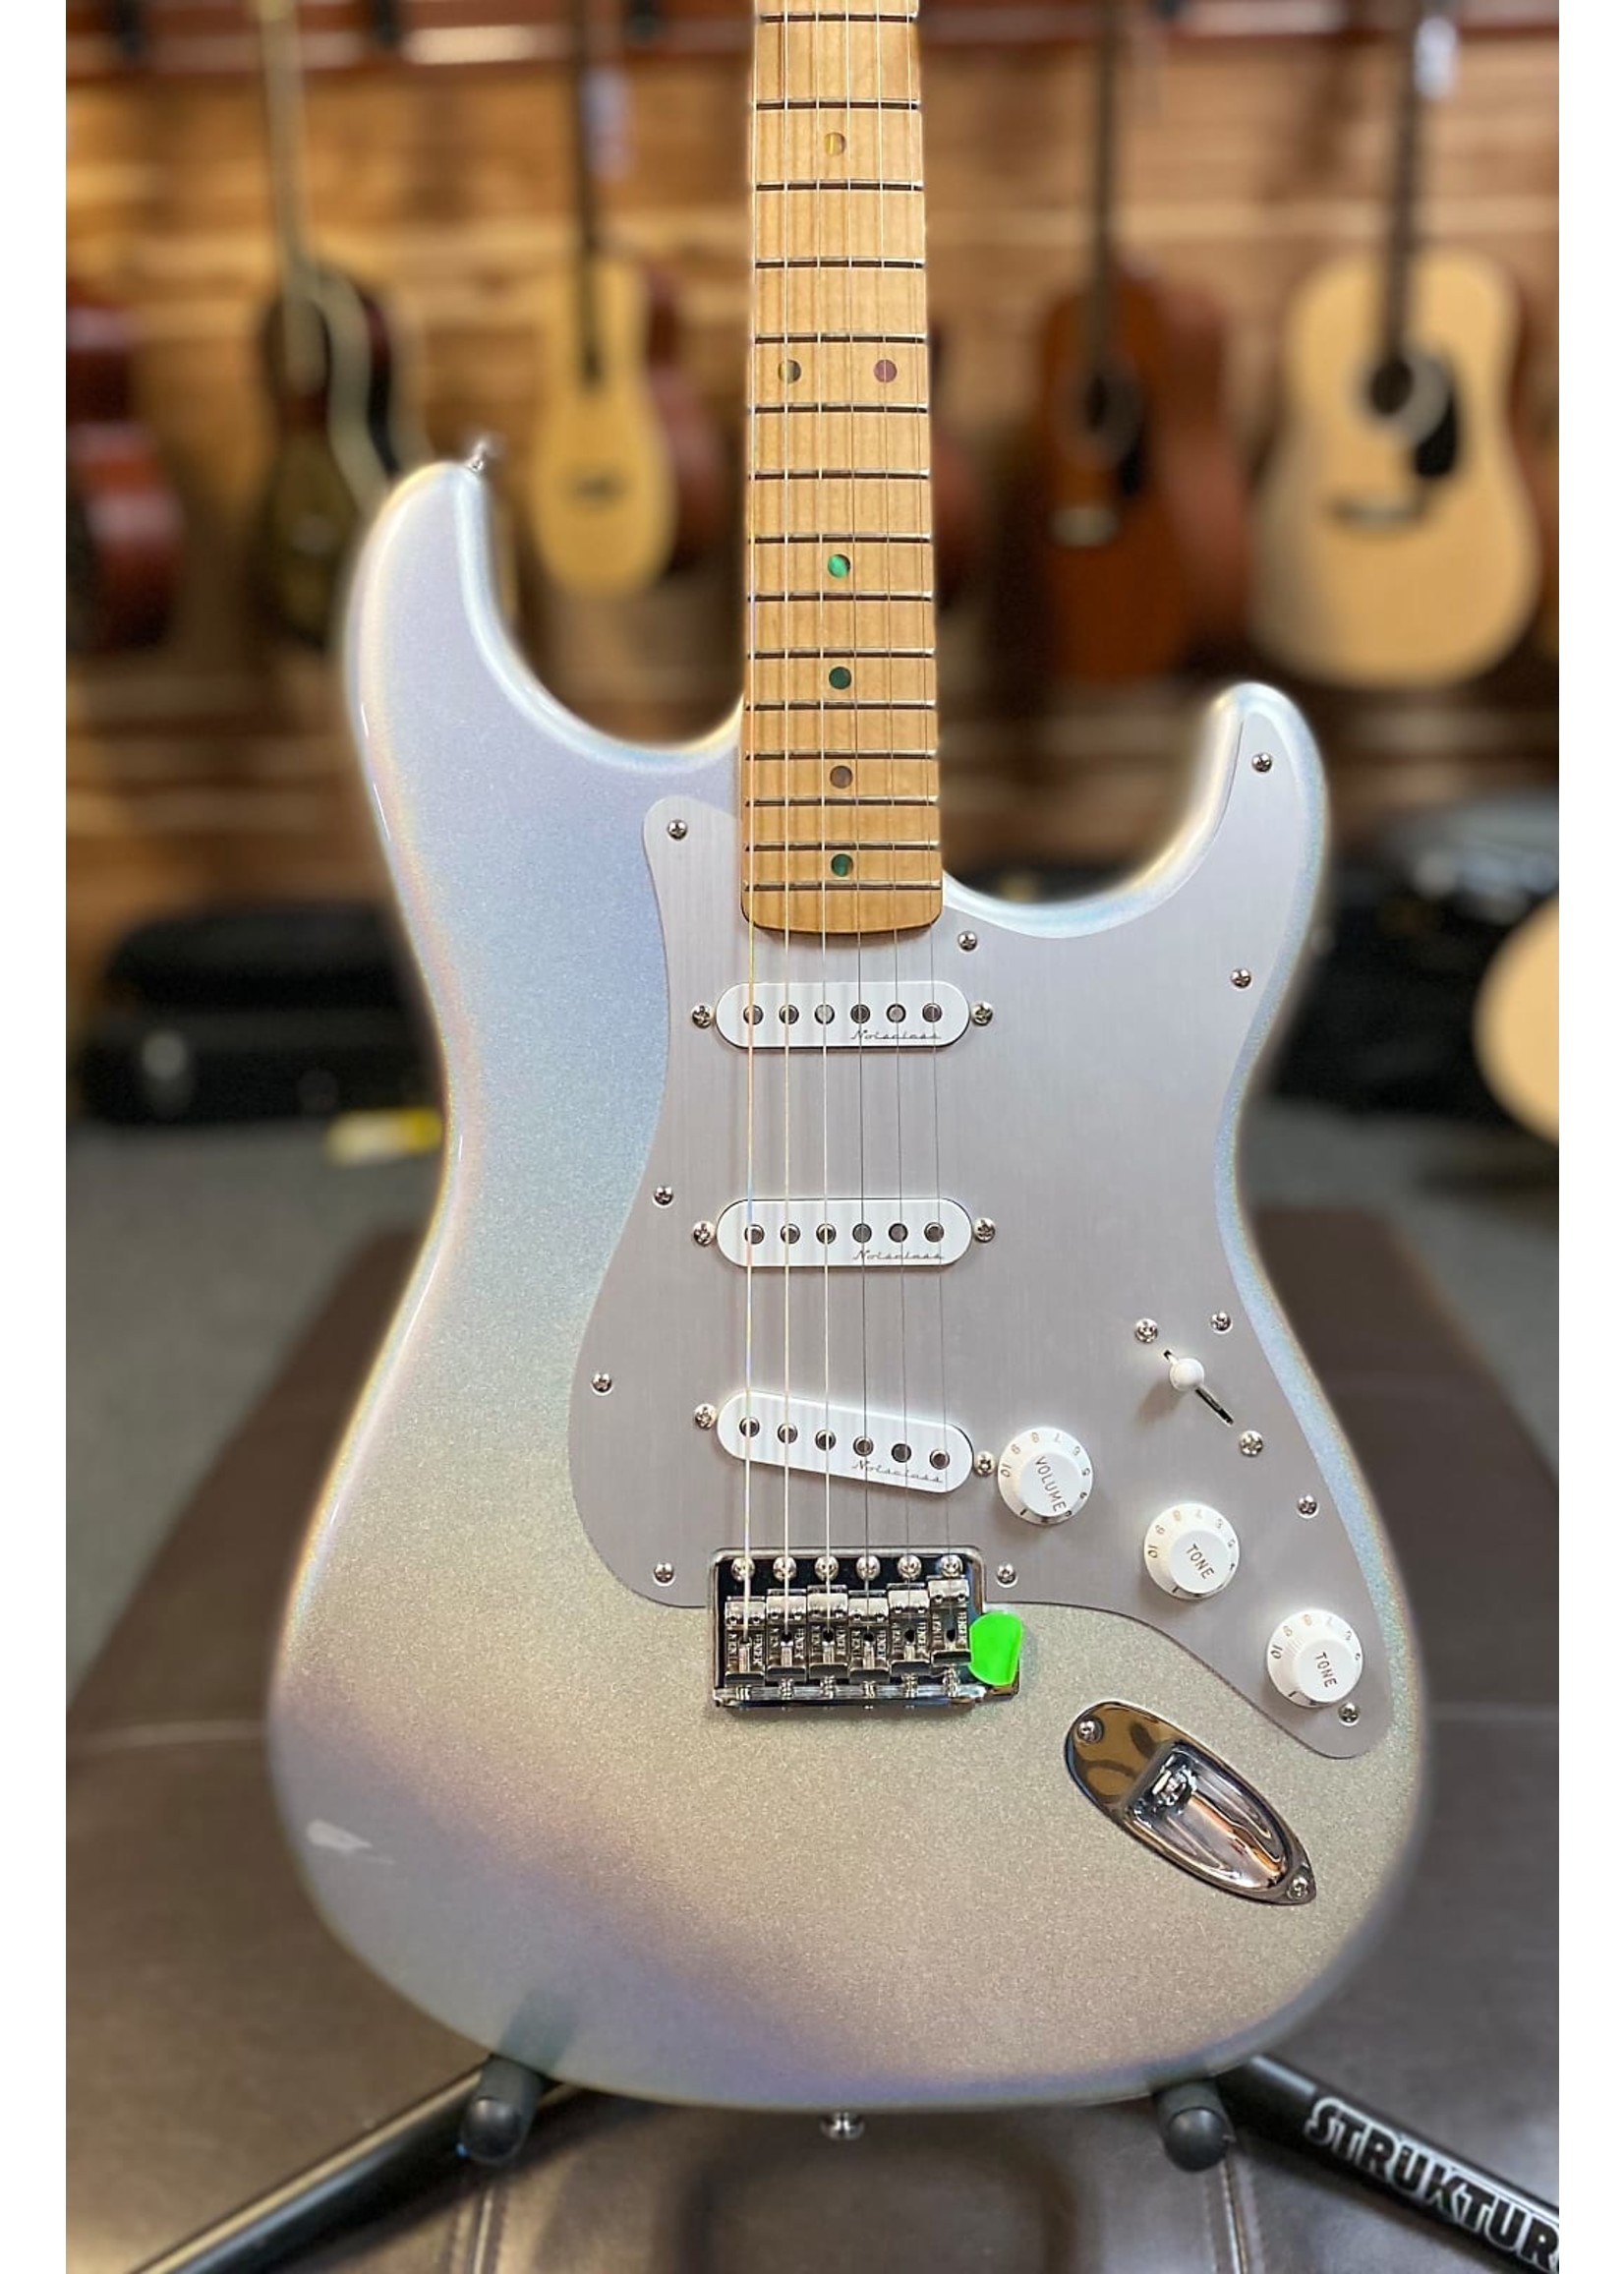 FENDER Fender H.E.R. Stratocaster  "Chrome Glow" Electric Guitar w/Gigbag